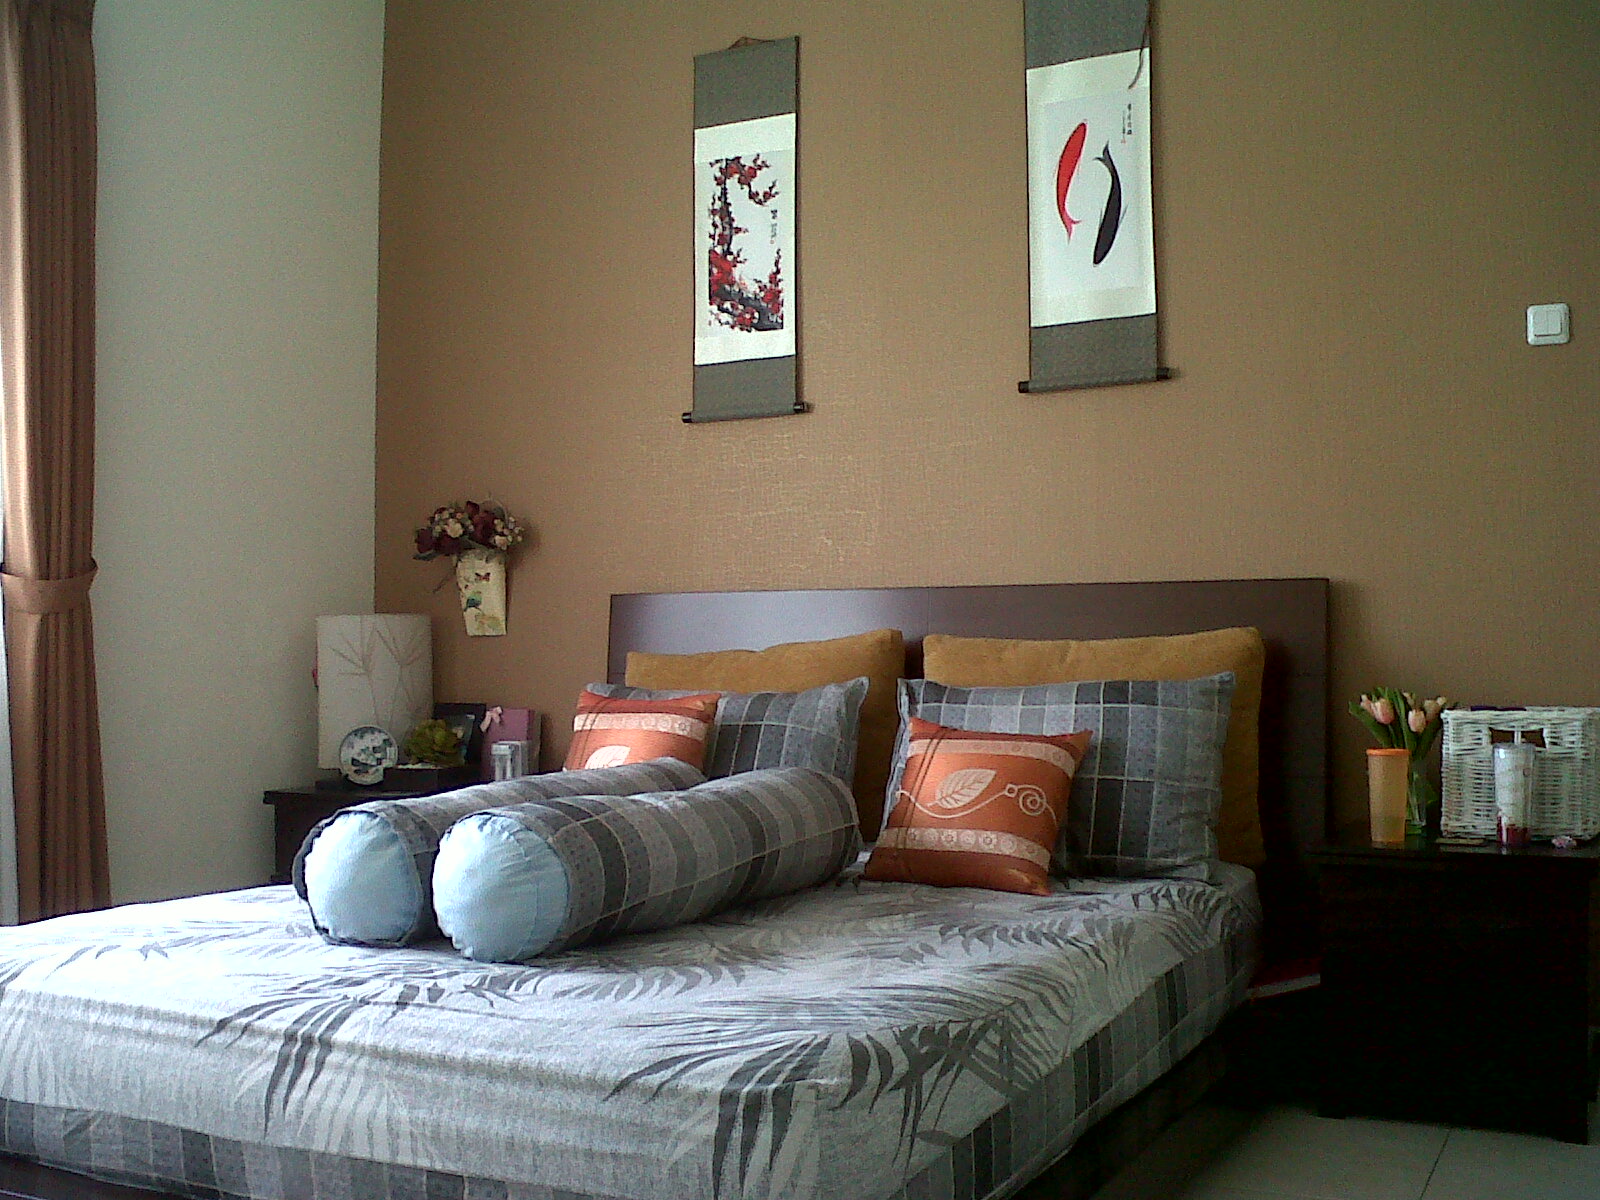 carta da parati warna coklat,camera da letto,mobilia,letto,camera,proprietà